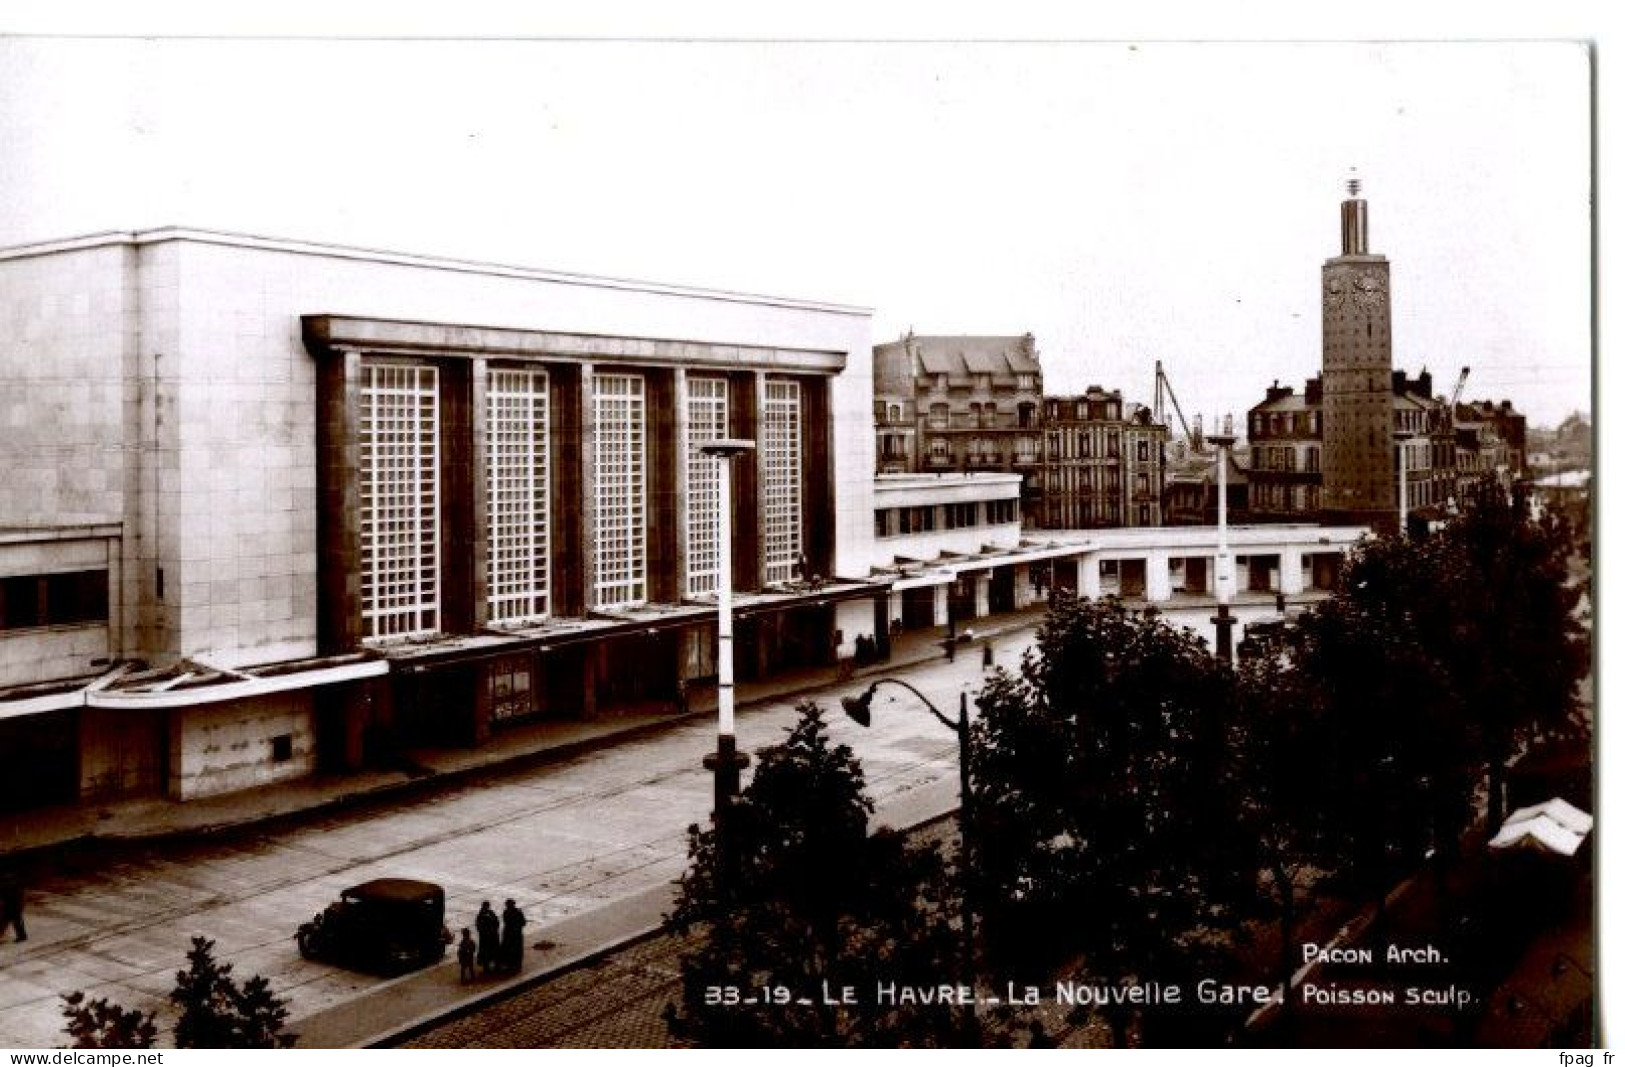 Le Havre (76 - Seine Maritime) - 33 - 19 - La Nouvelle Gare - Poisson Sculp. - Bahnhof